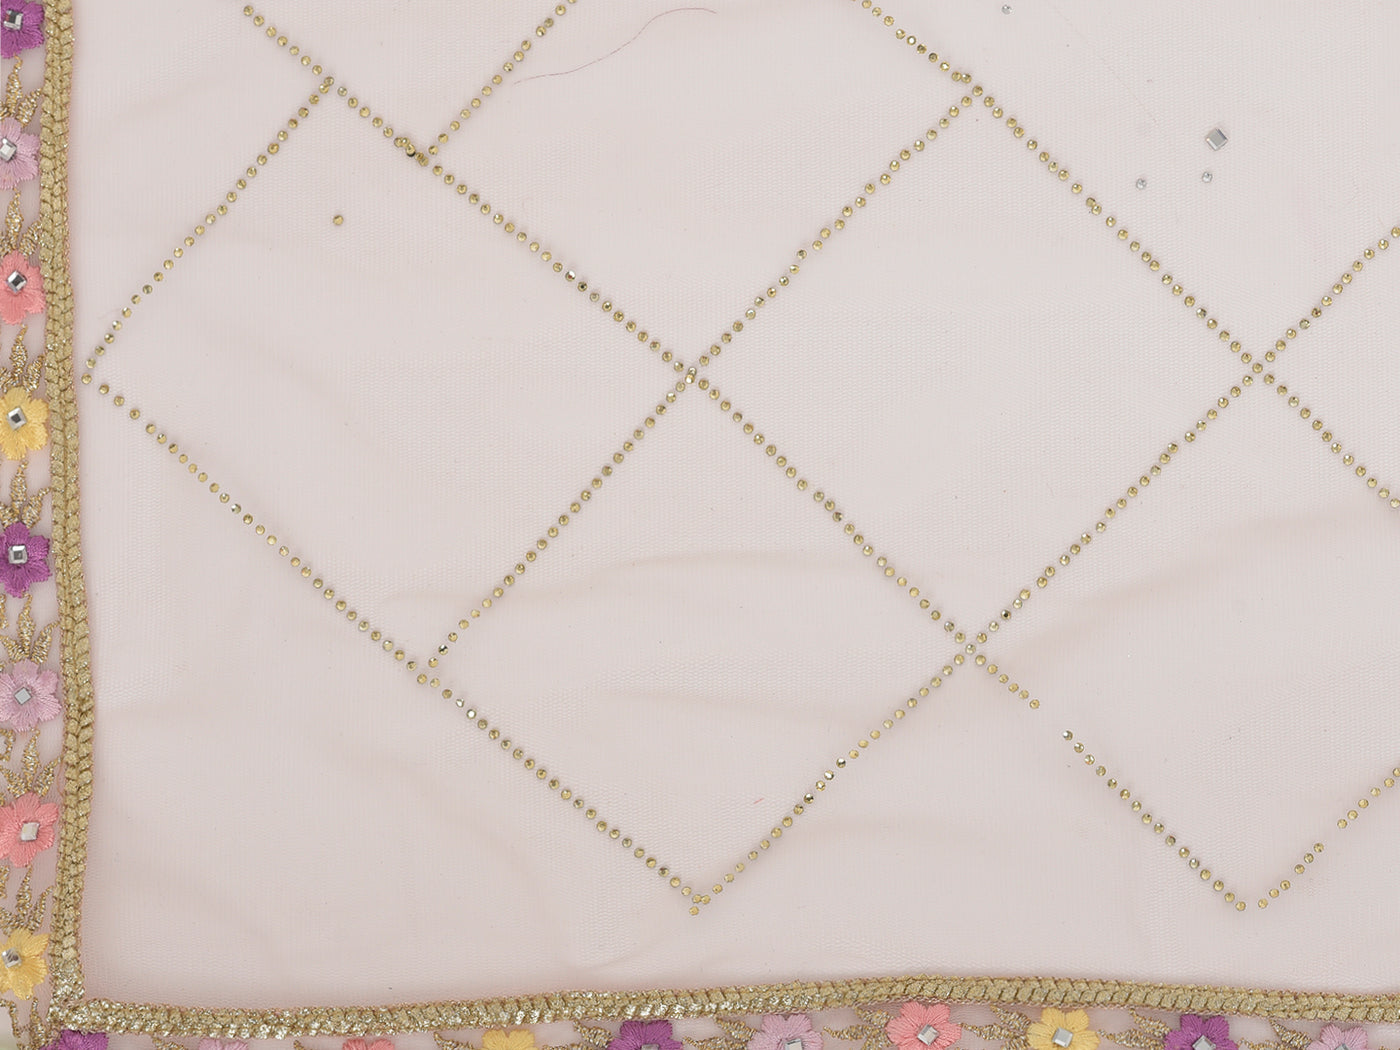 Neeru's Pink Color Georgette Fabric Salwar Kameez